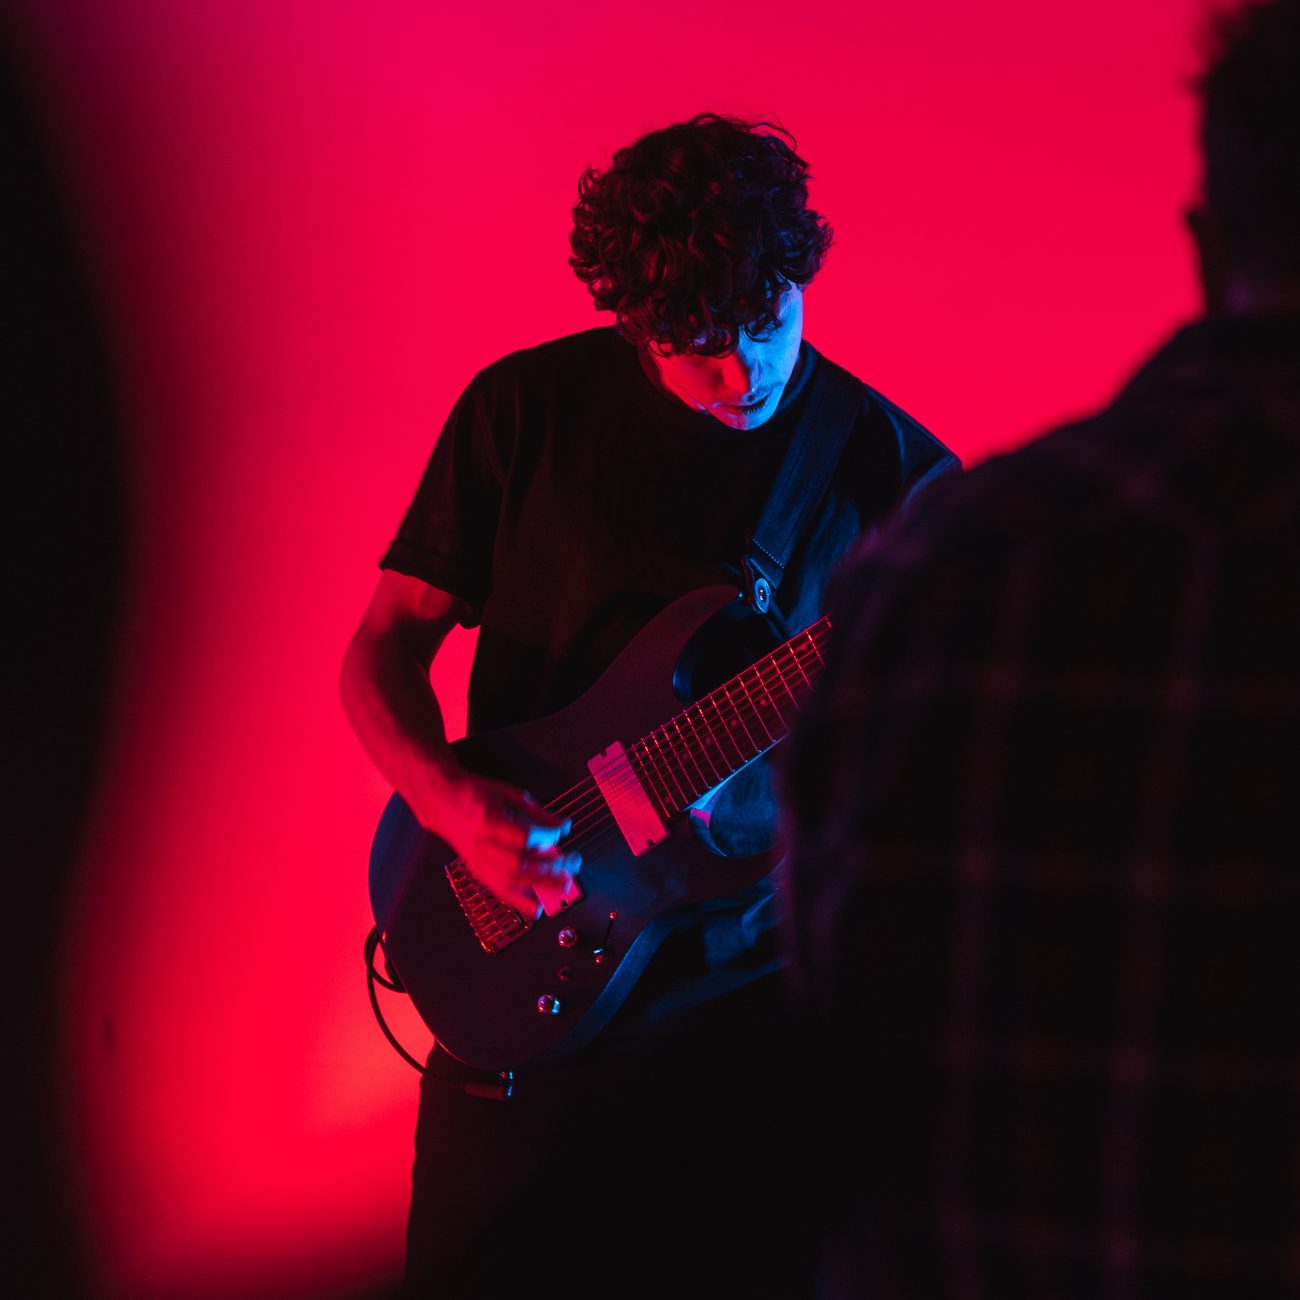 Gitarrist vor Roter Wand mit Kameramann im Vordergrund